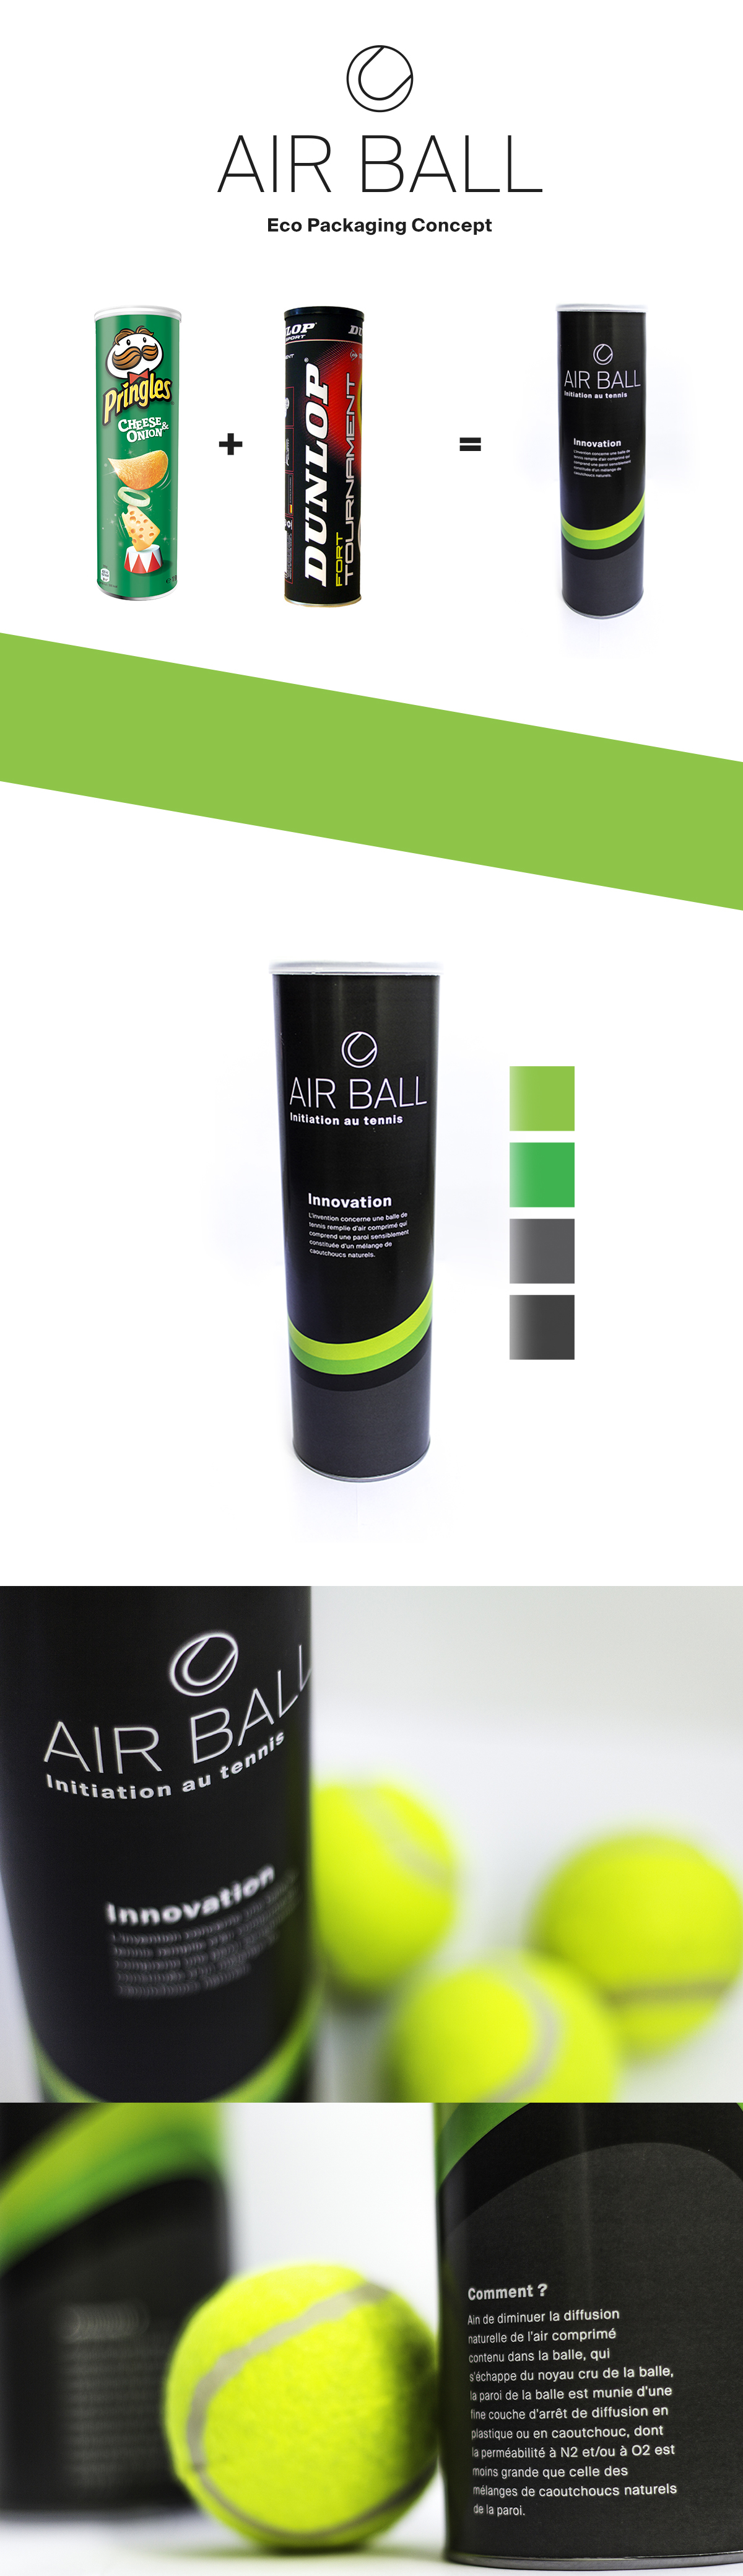 tennis ecologie design green ball